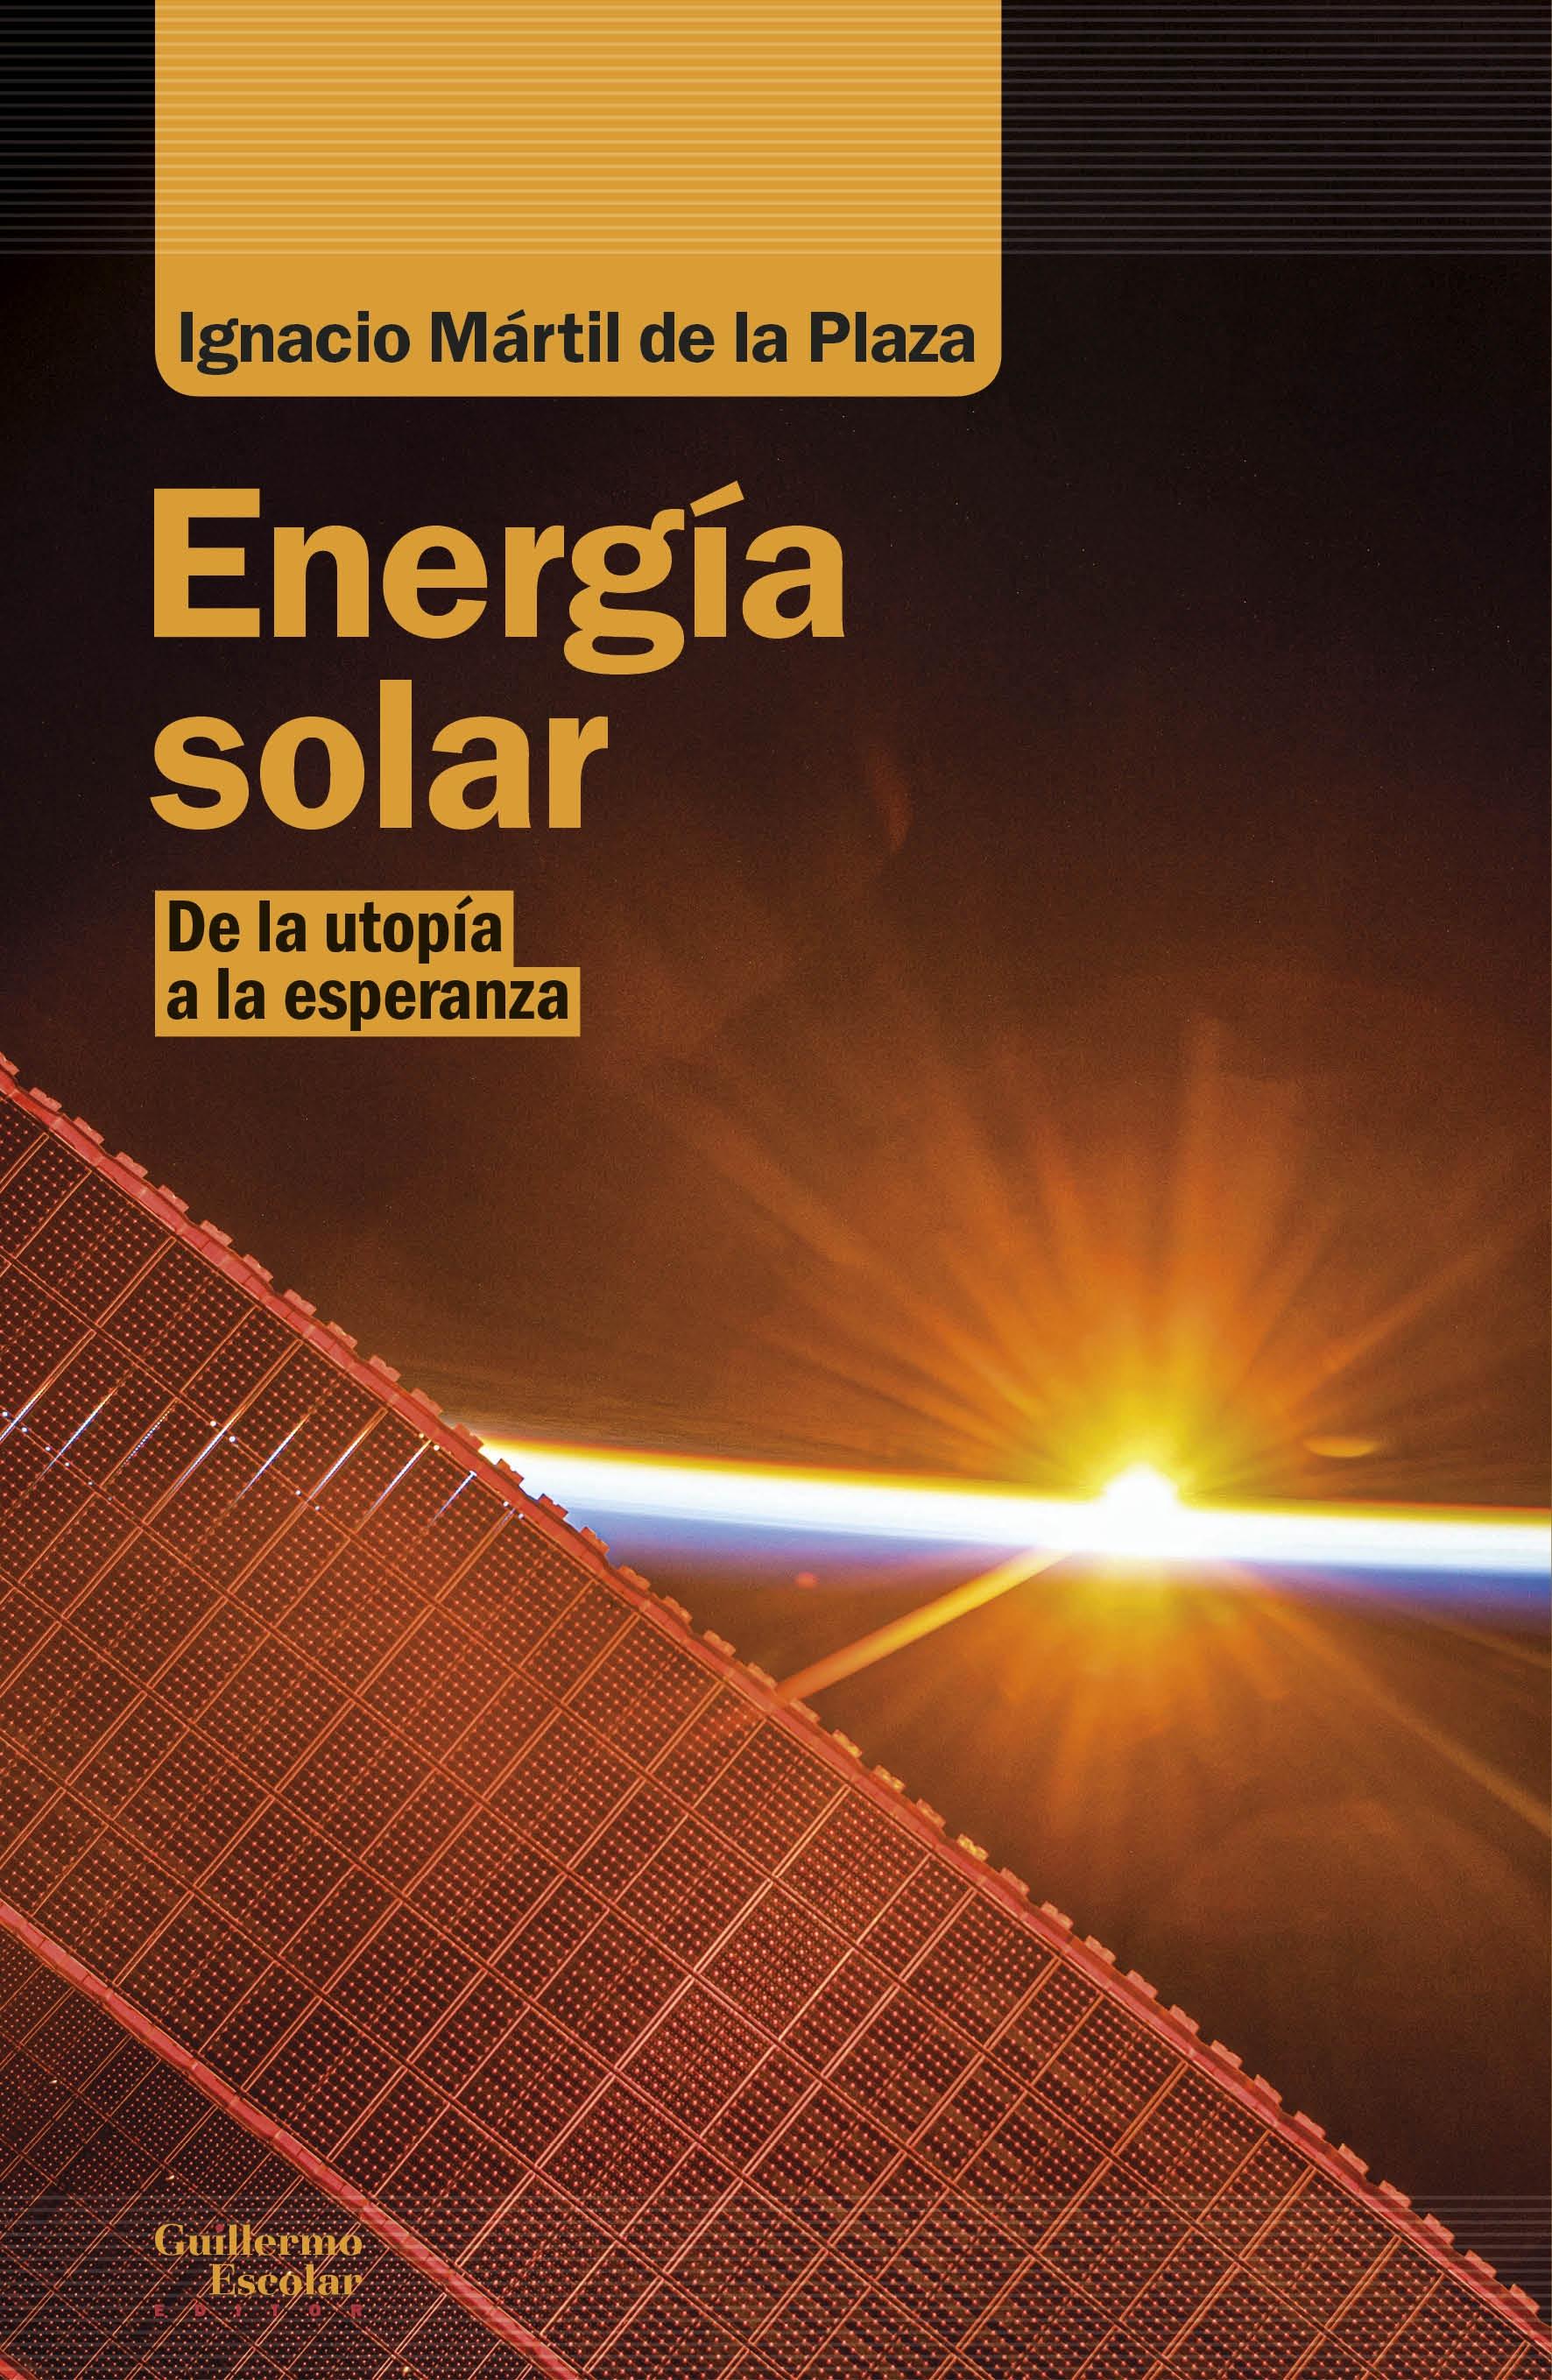 Energía solar "De la utopía a la esperanza"